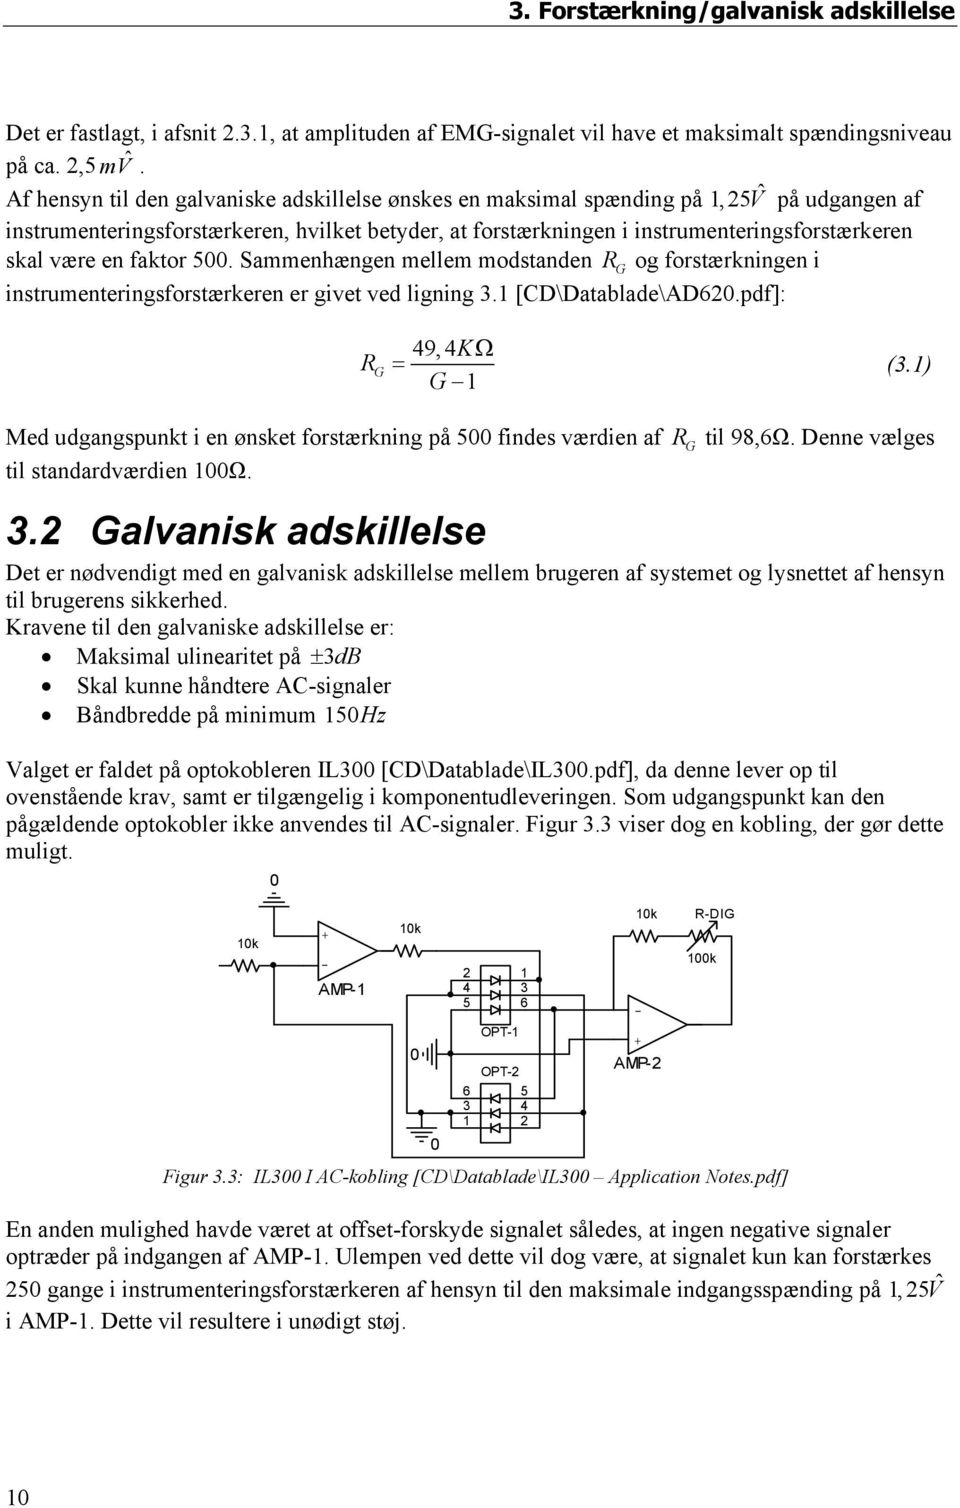 være en faktor 5. Sammenhængen mellem modstanden R G og forstærkningen i instrumenteringsforstærkeren er givet ved ligning 3.1 [CD\Datablade\AD62.pdf]: R G 49,4KΩ = G 1 (3.